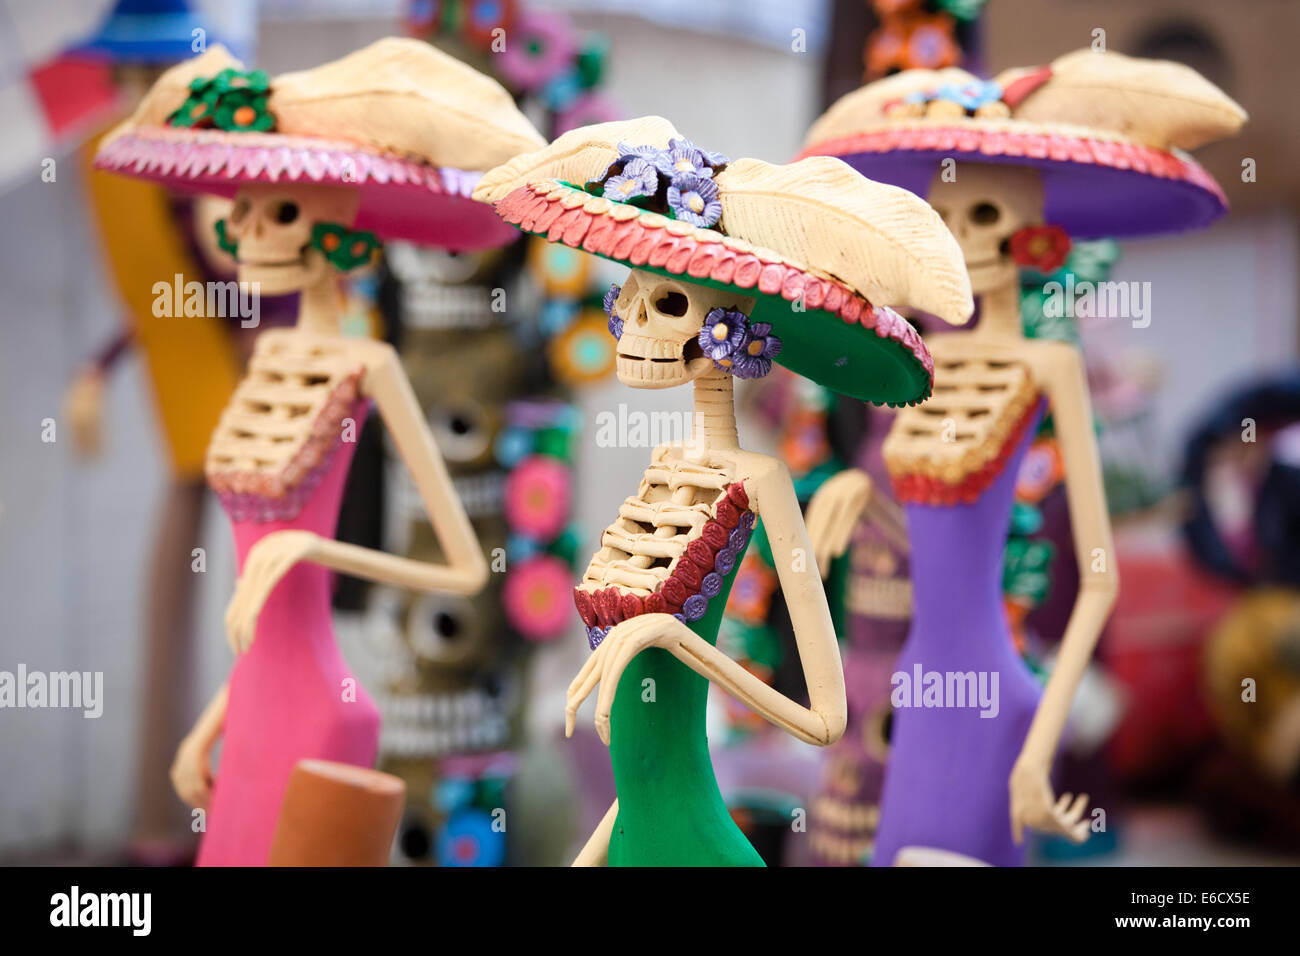 Catrinas pendant le Jour des Morts Les festivités dans un marché de Patzcuaro, Michoacan au Mexique. Banque D'Images